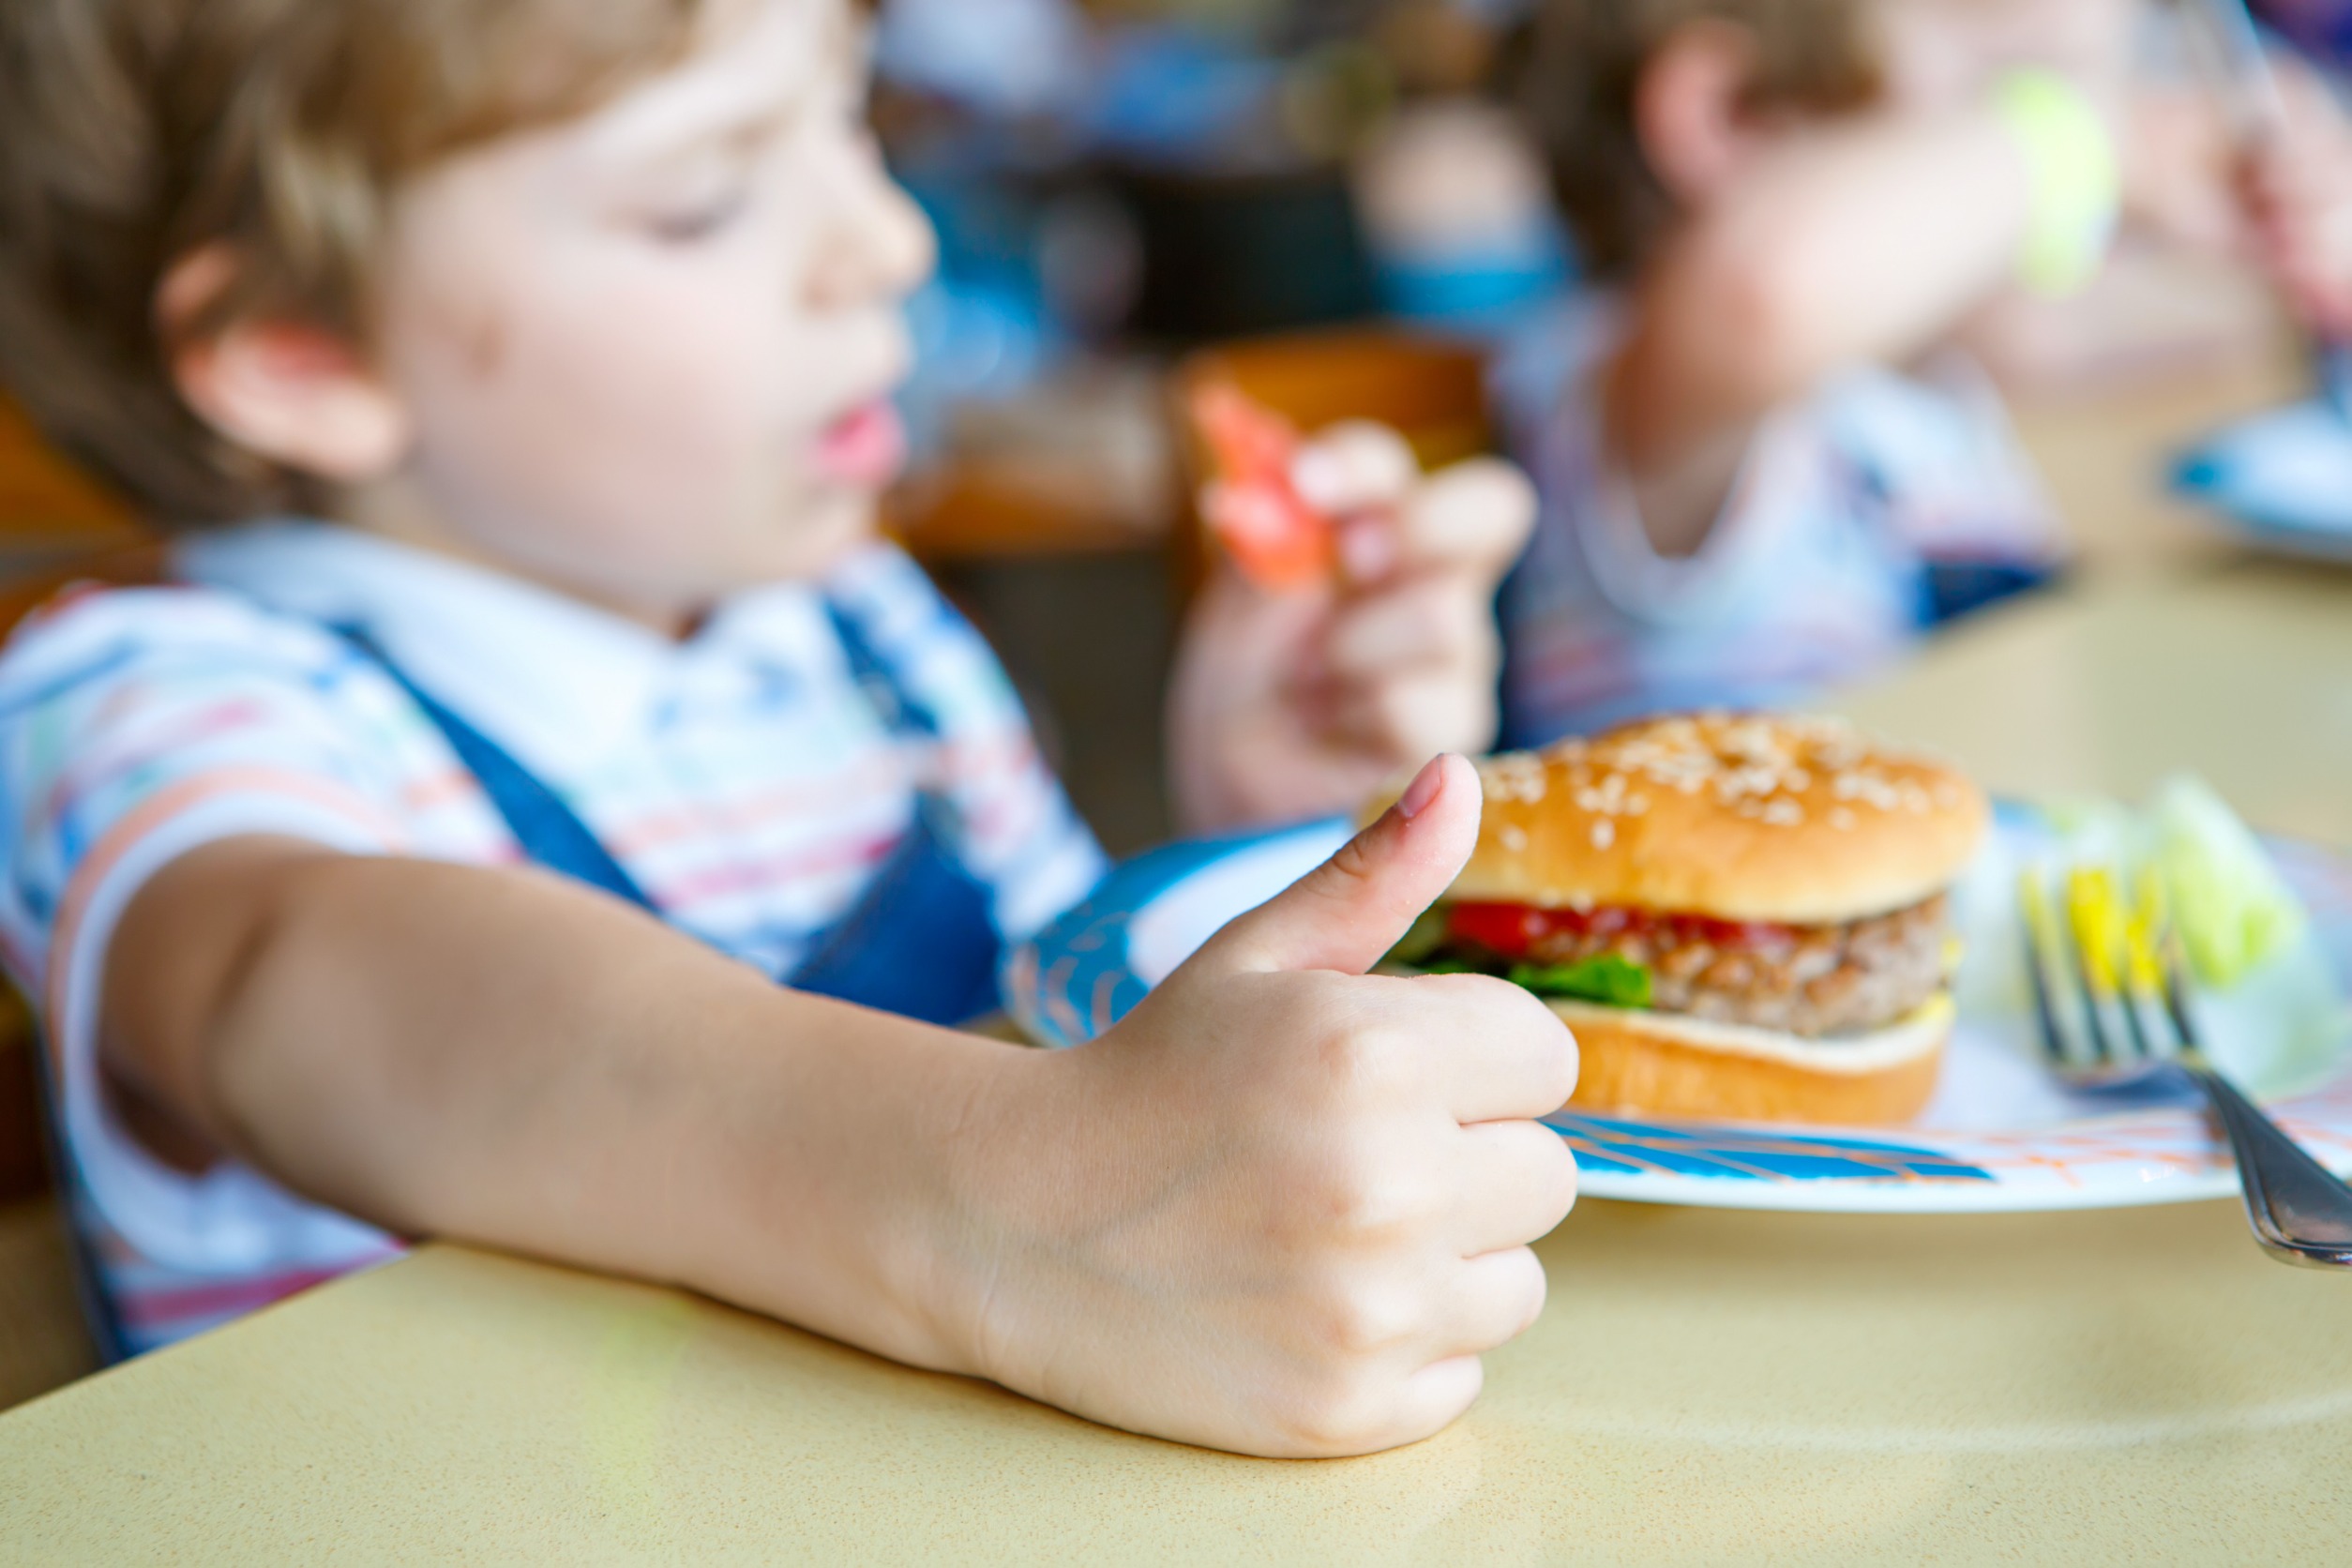 Denk je dat scholen genoeg doen om kinderen te informeren over gezond eten? 12